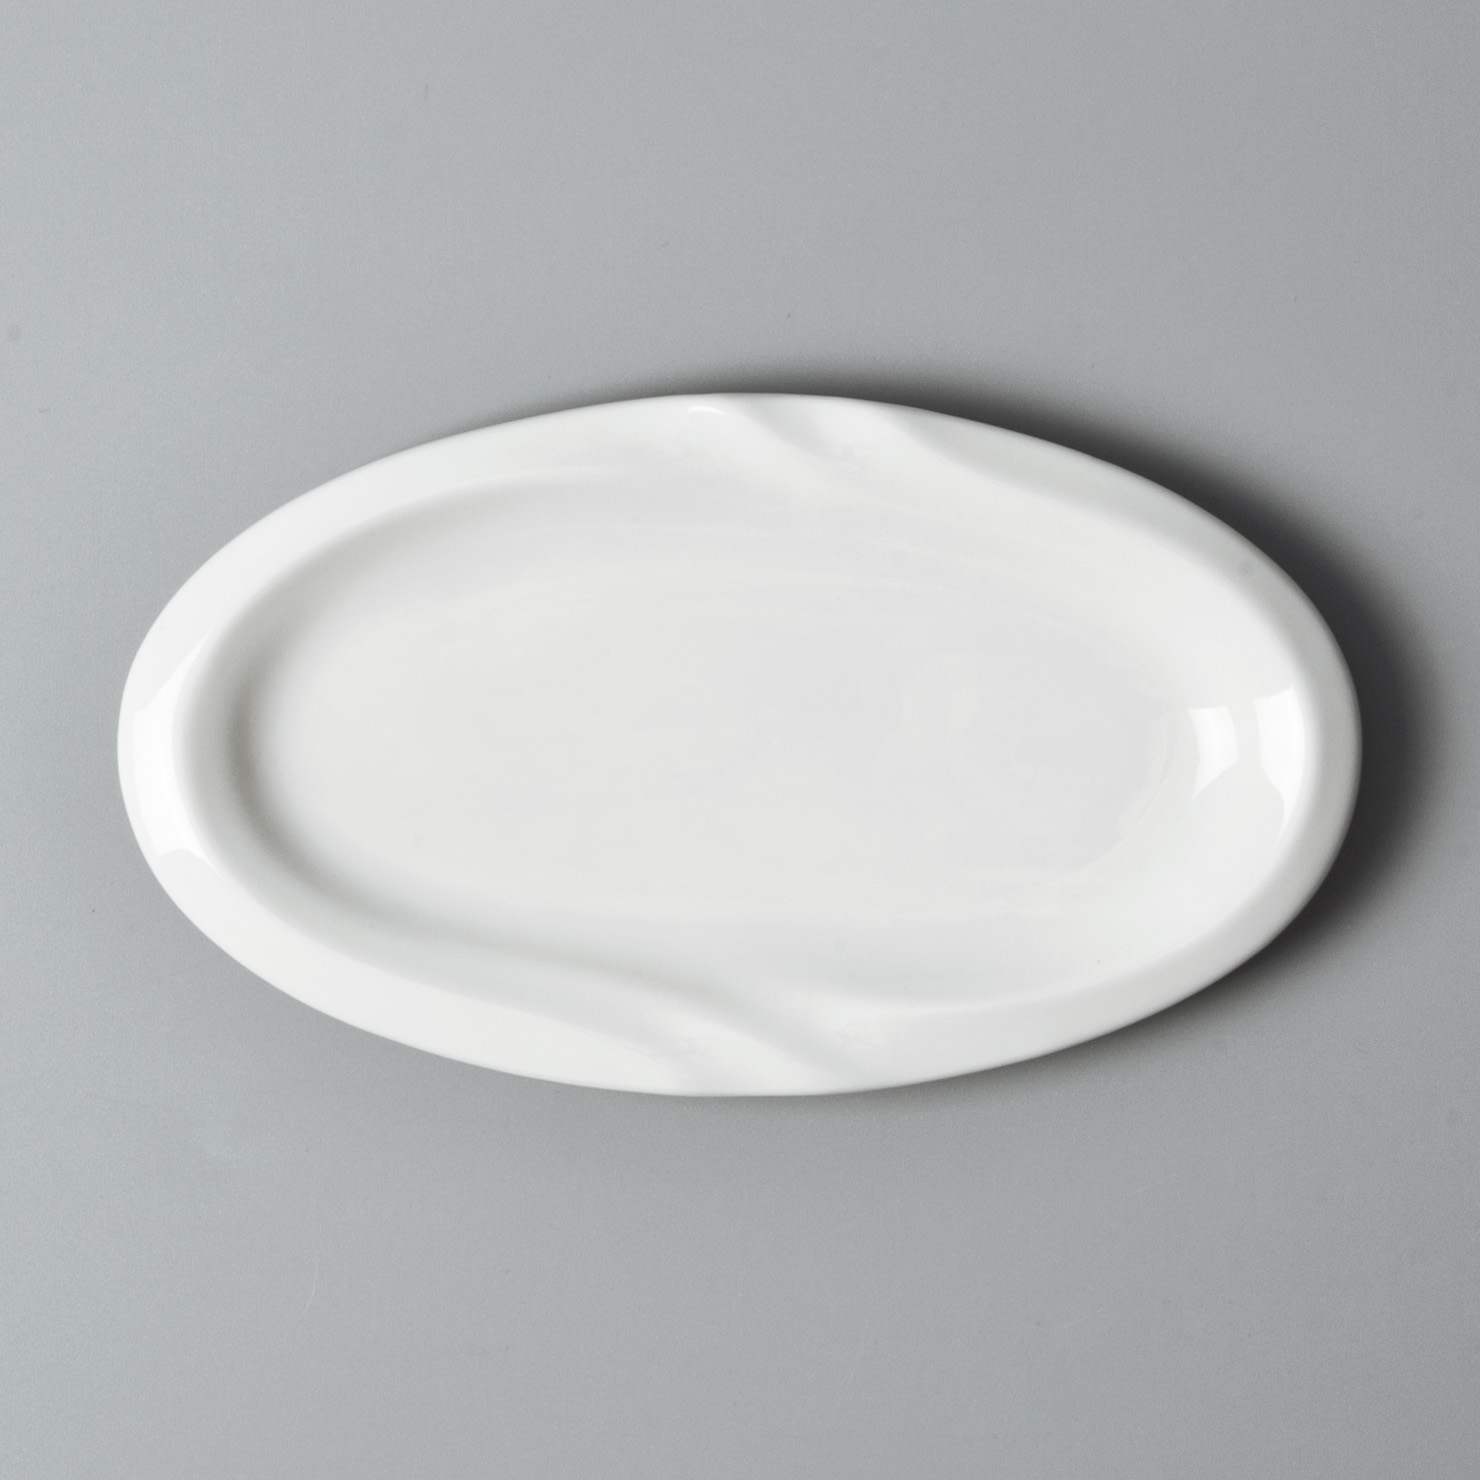 High-quality custom restaurant plates for business for dinner-8